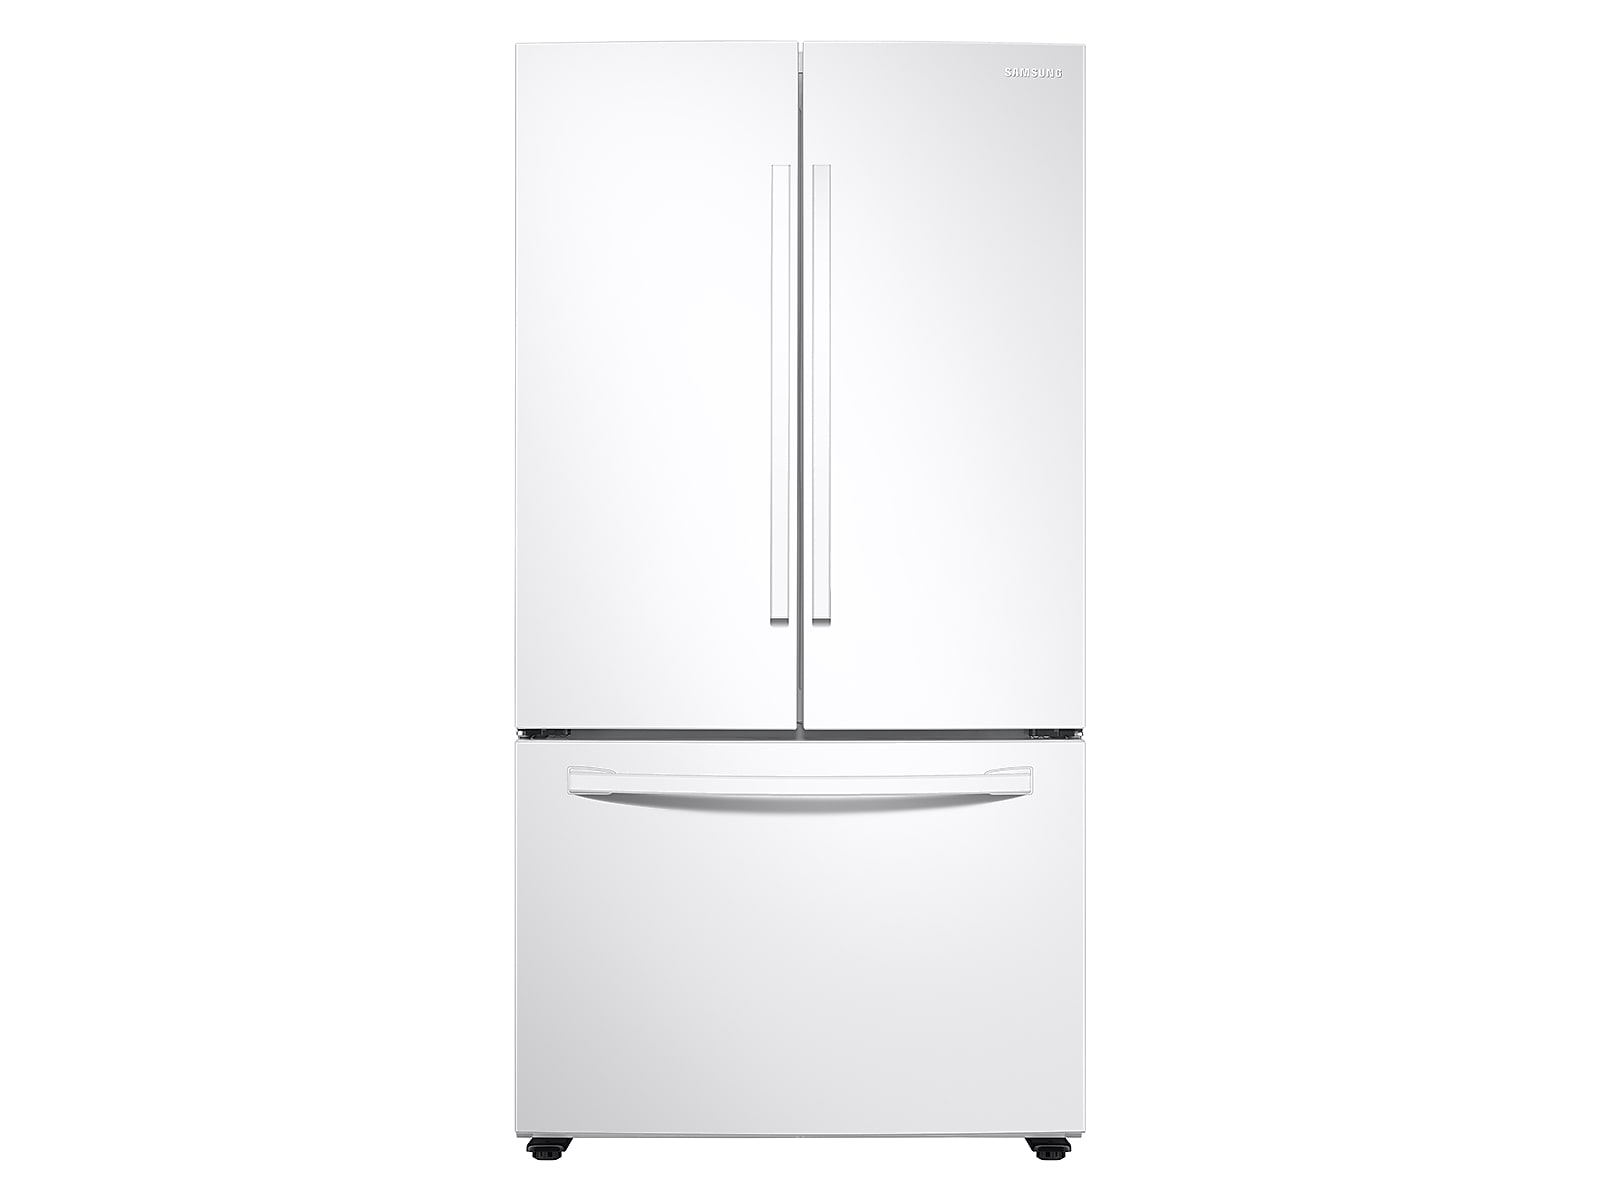 Samsung 28 cu. ft. Large Capacity 3-Door French Door Refrigerator in White(RF28T5001WW/AA)